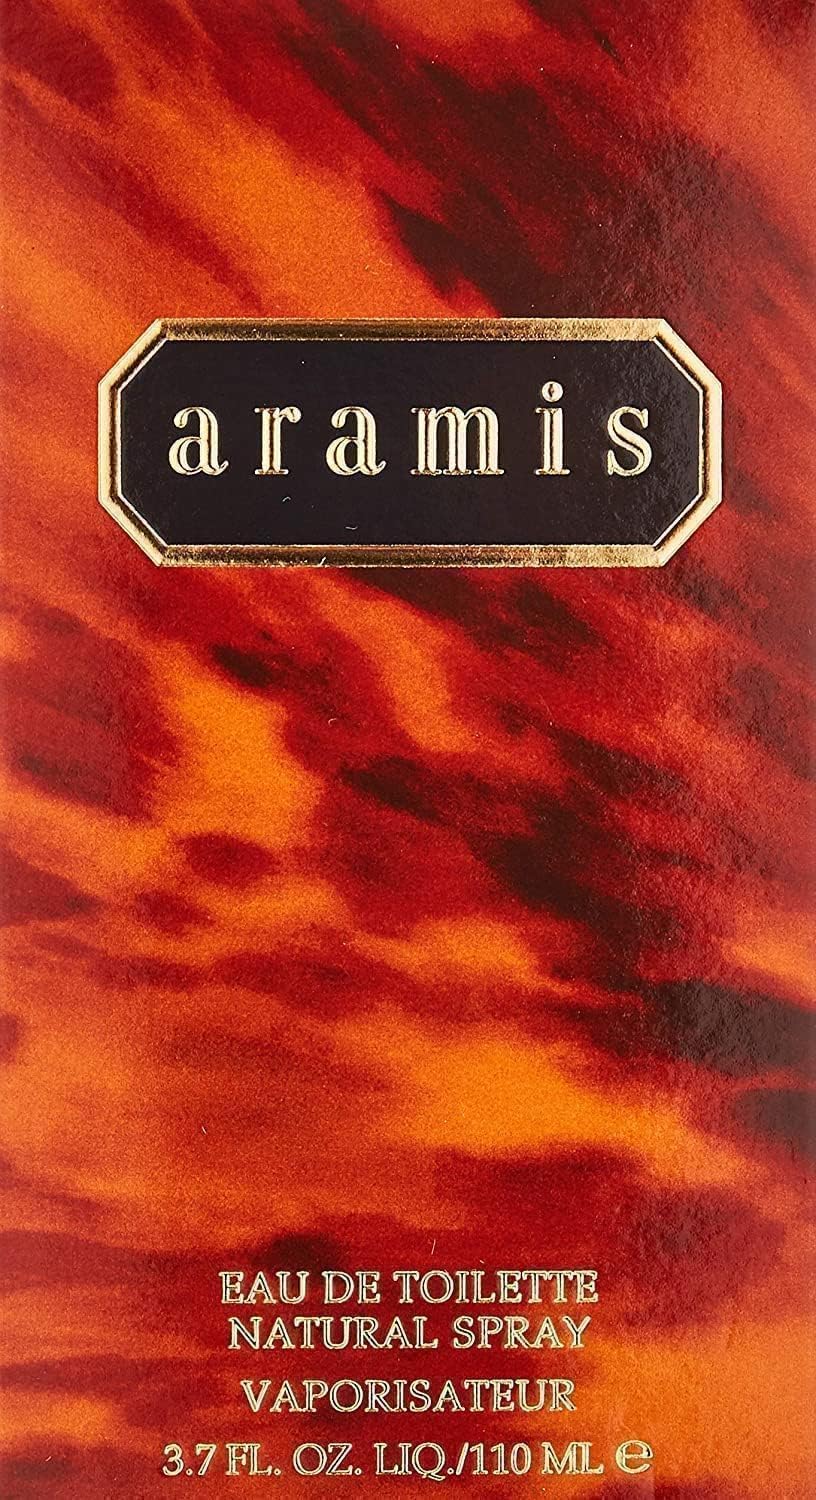 ARAMIS by Aramis 3.7oz / 110 ml Cologne EDT Spray